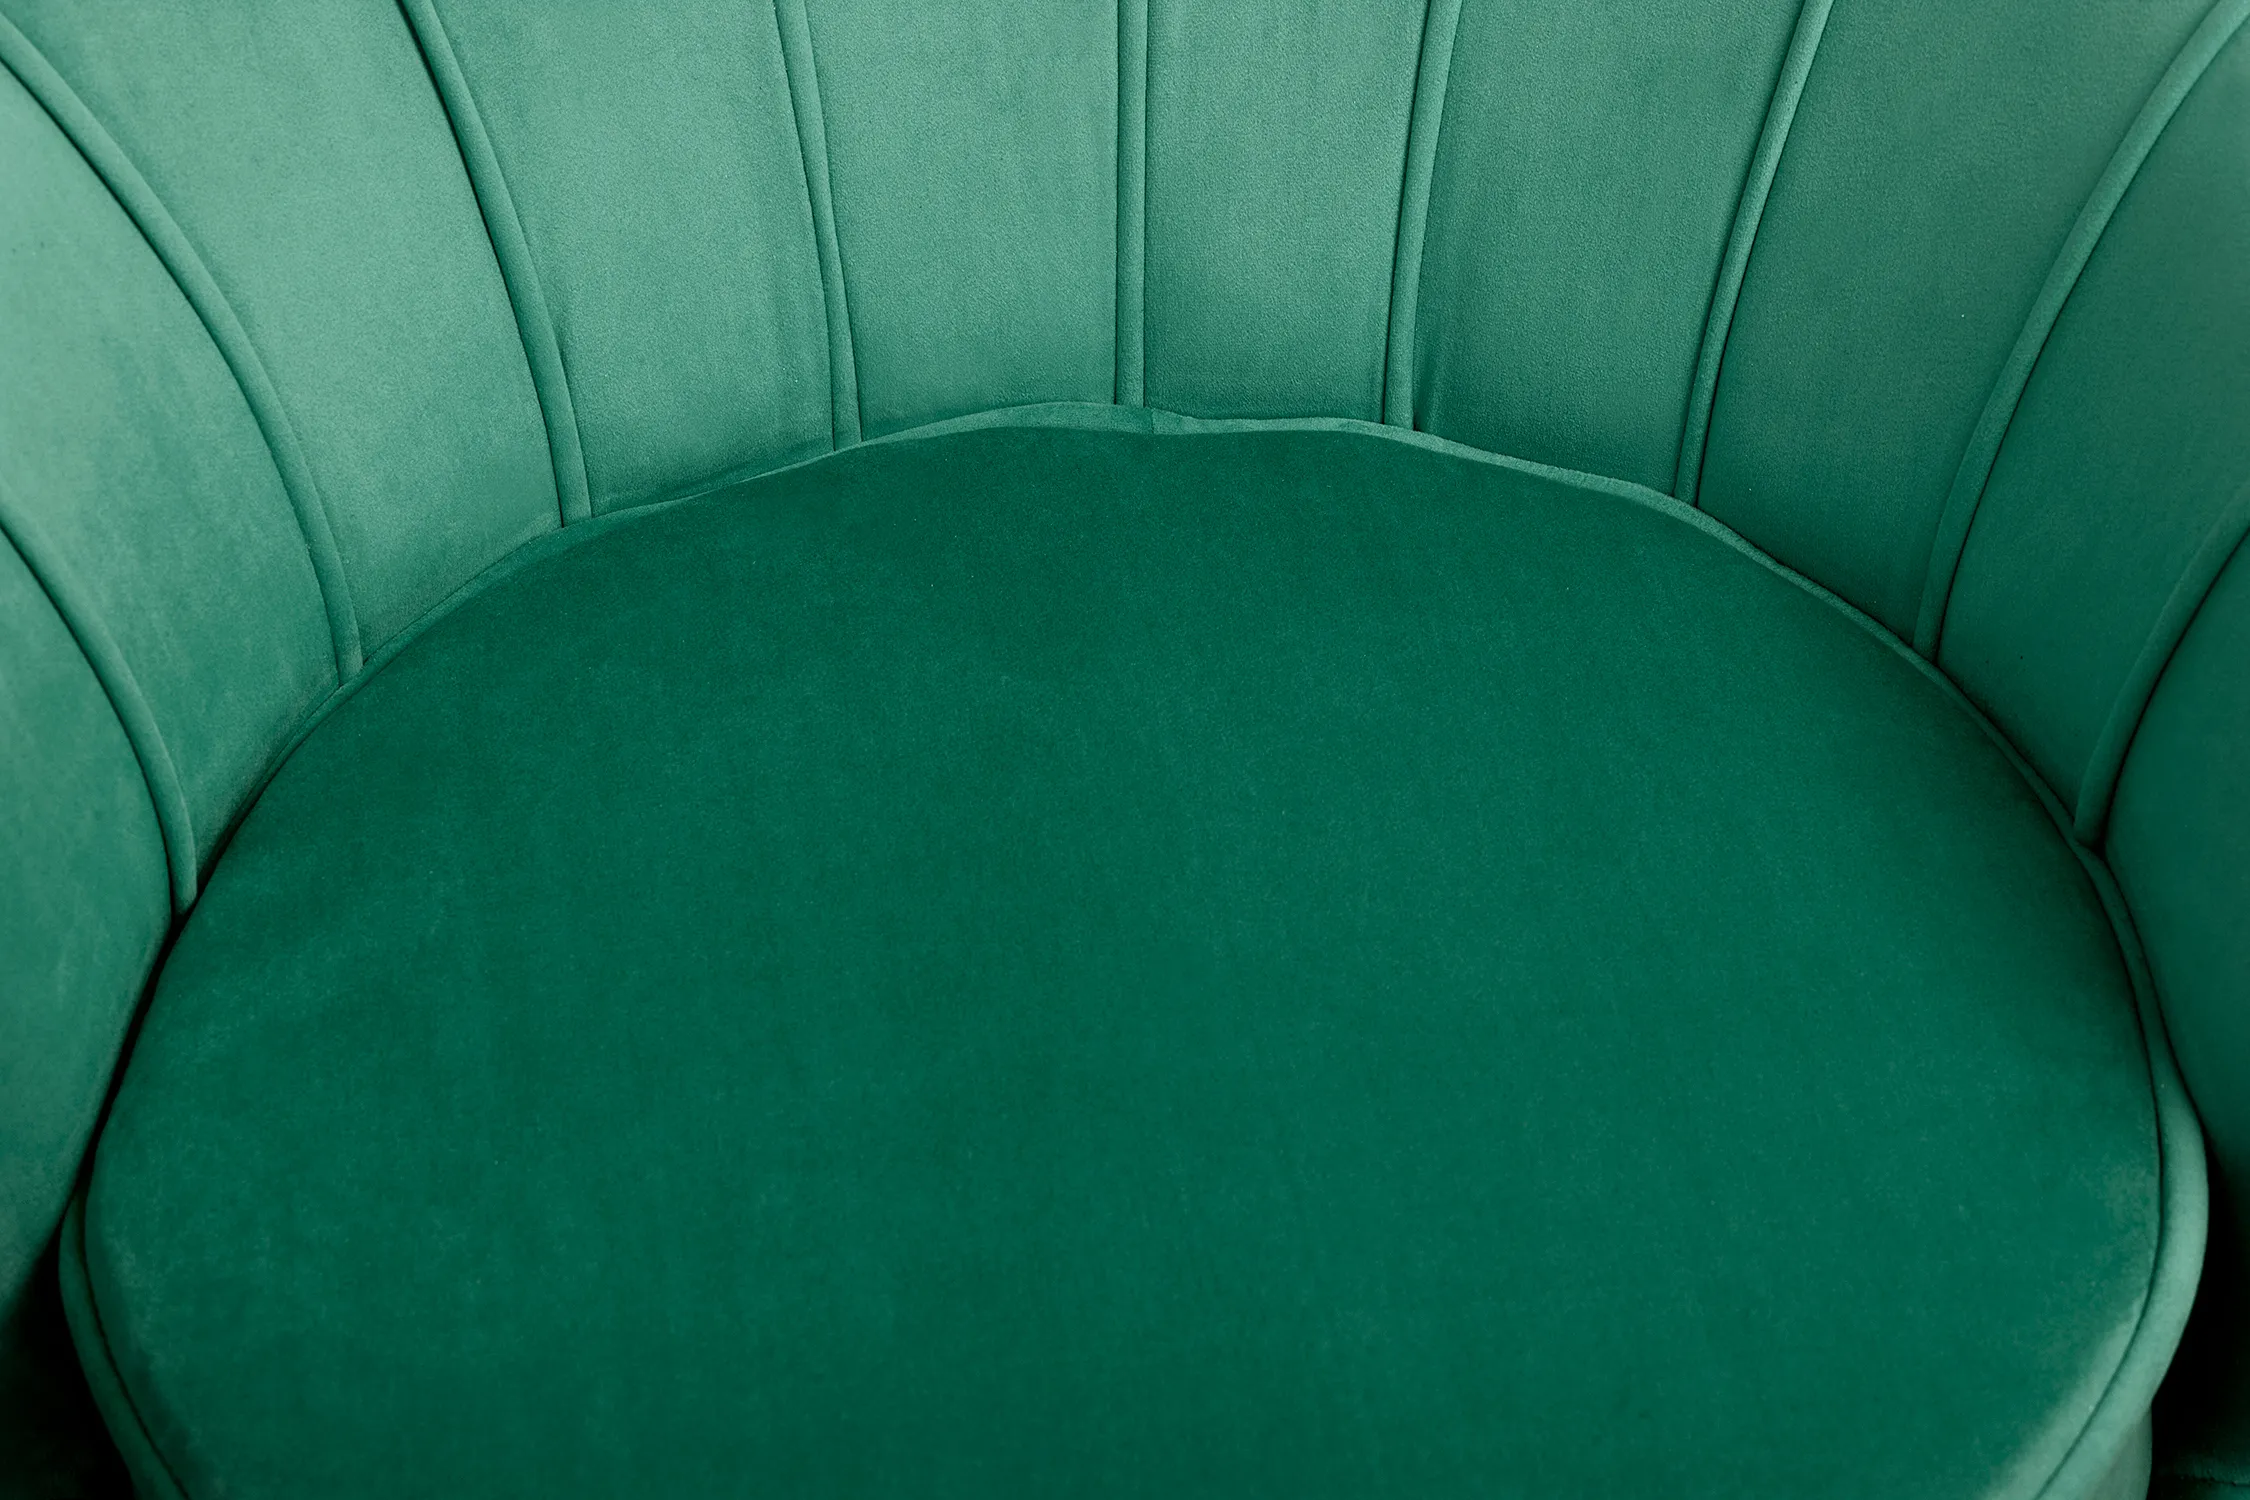 Кресло Pearl green v2 зеленый 7LV29040-GRE